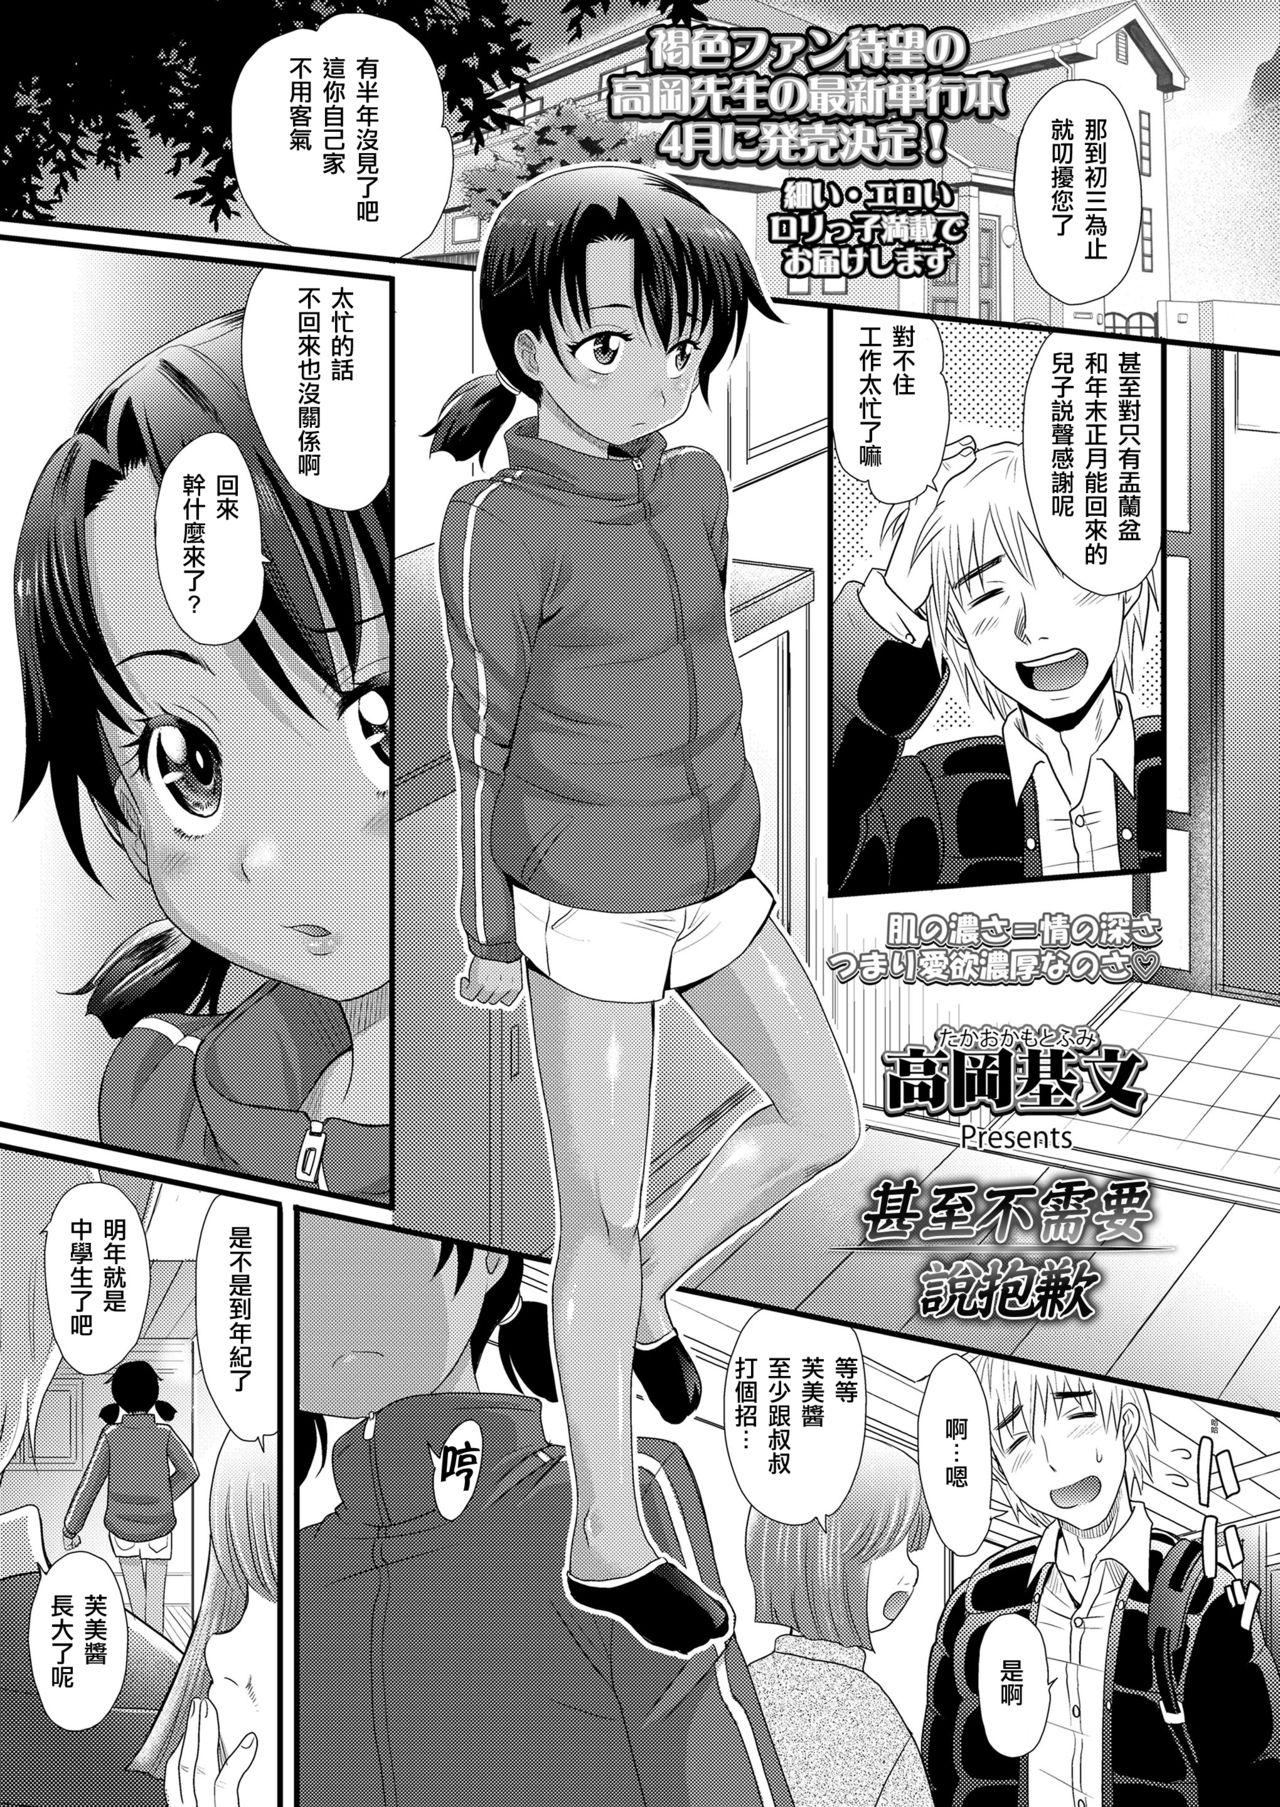 Stripping Gomennasai Toiu Made wa | 甚至不需要說抱歉 Art - Page 2